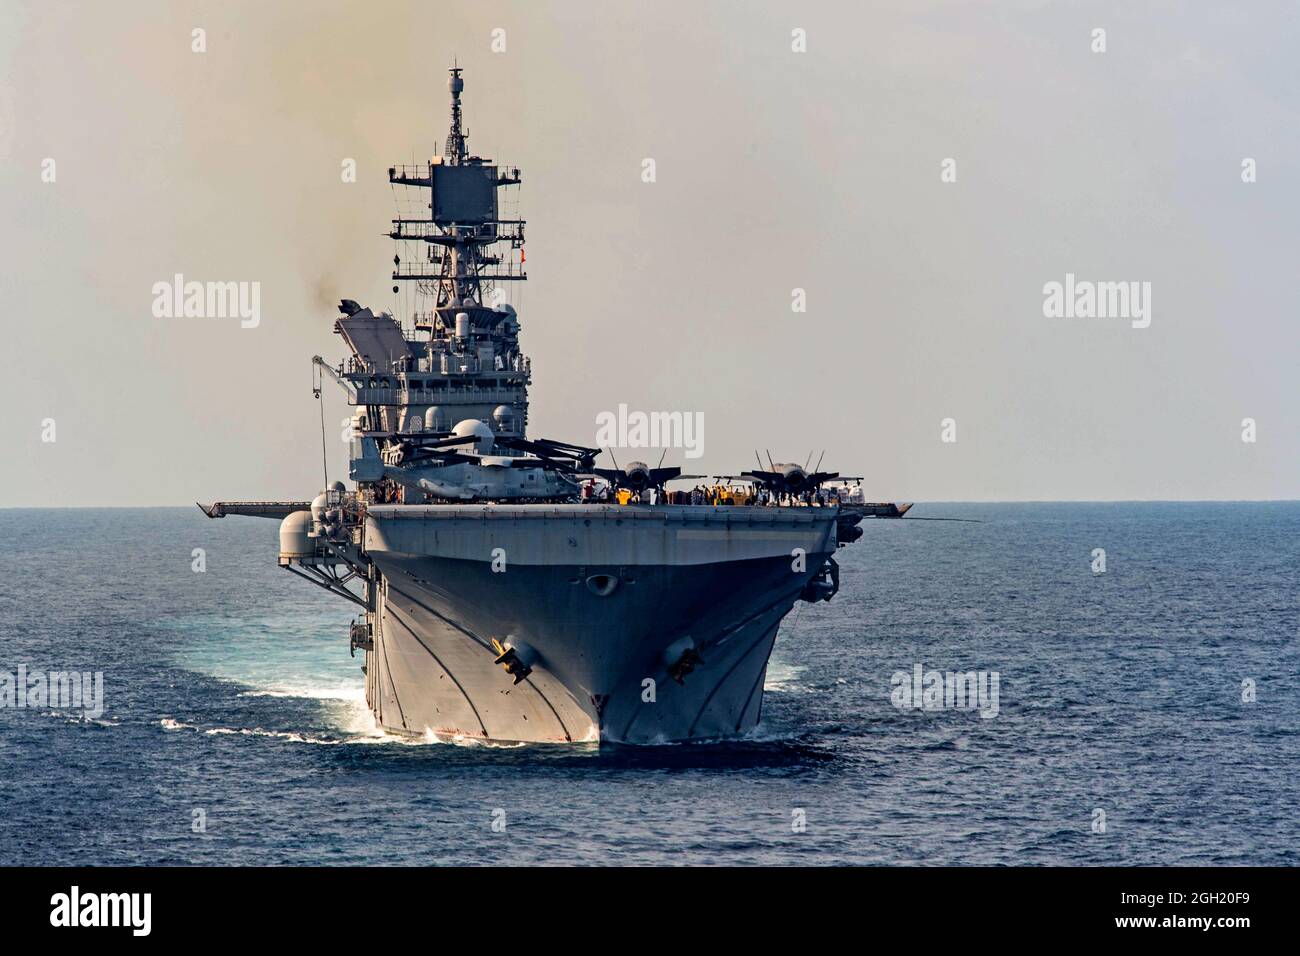 GOLFO DE TAILANDIA (1 de marzo de 2020) El buque anfibio de asalto USS America (LHA 6) recibe carga del buque de carga seca y municiones USNS Cesar Chav Foto de stock